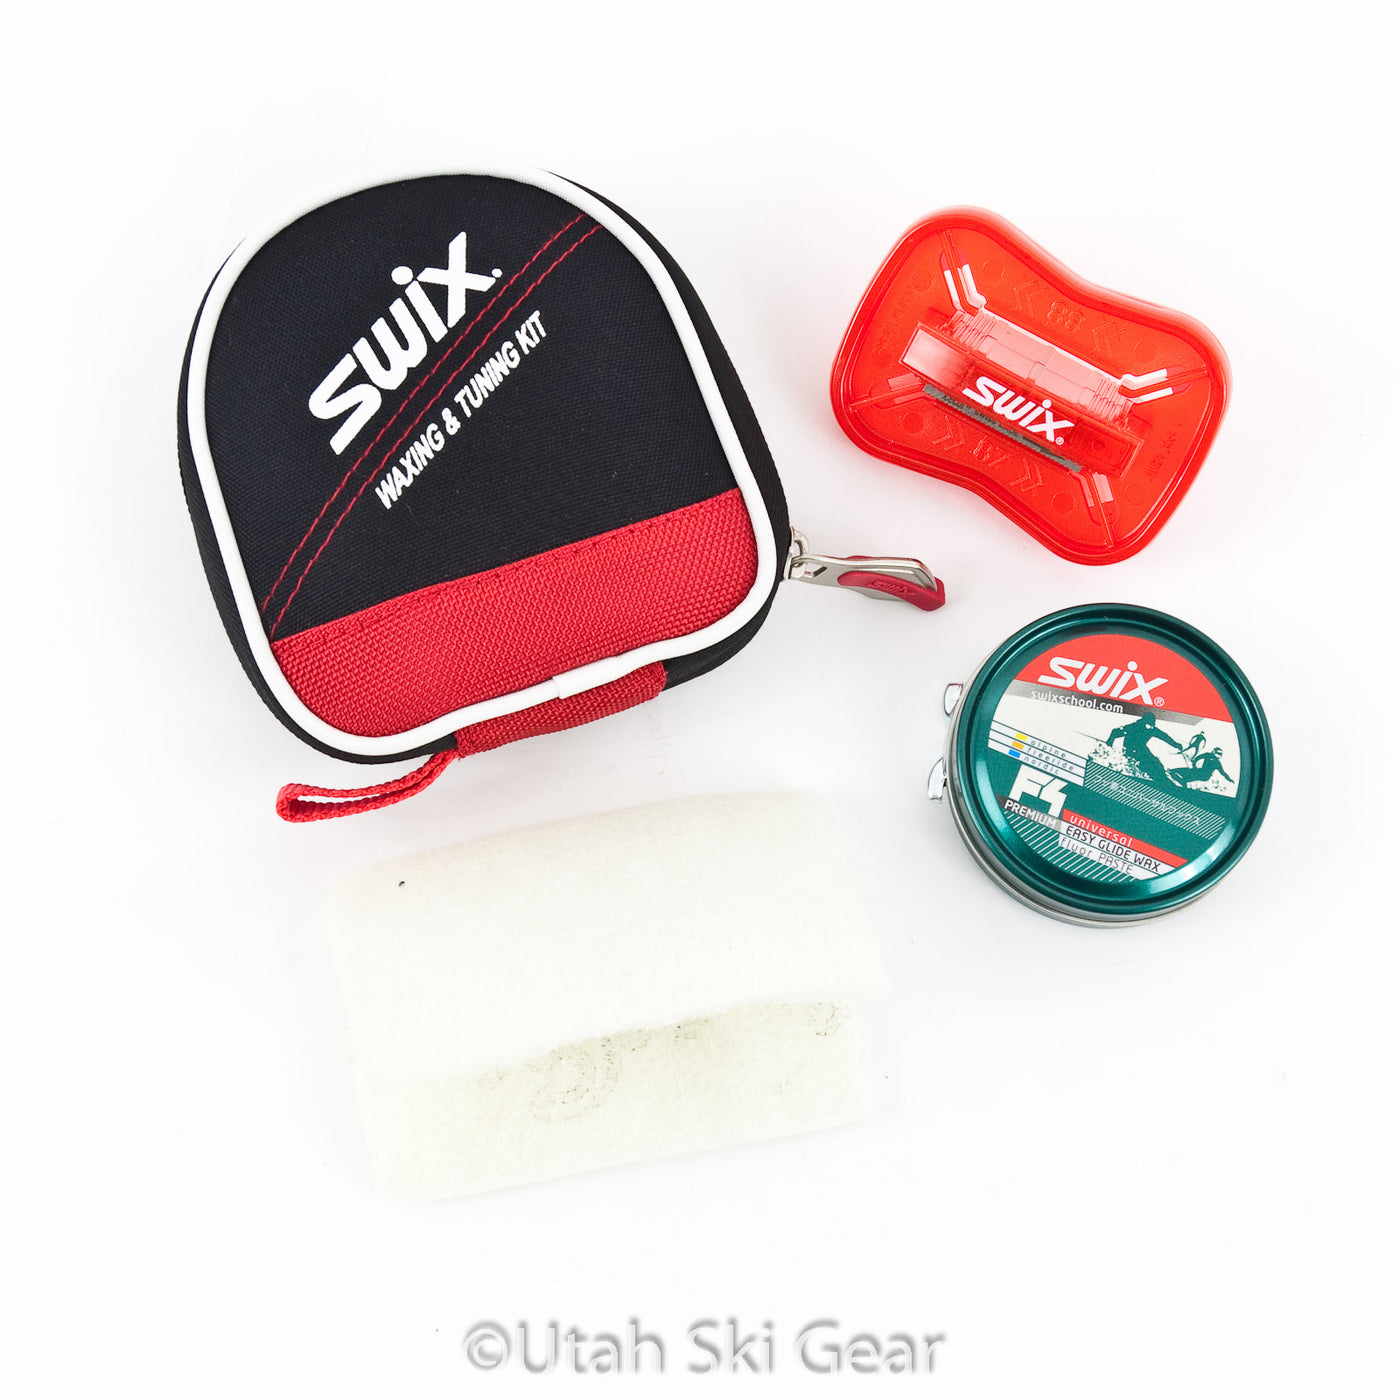 Swix Starter Alpine Wax and Tool Kit - 9615 TUNING EQUIPMENT Swix   